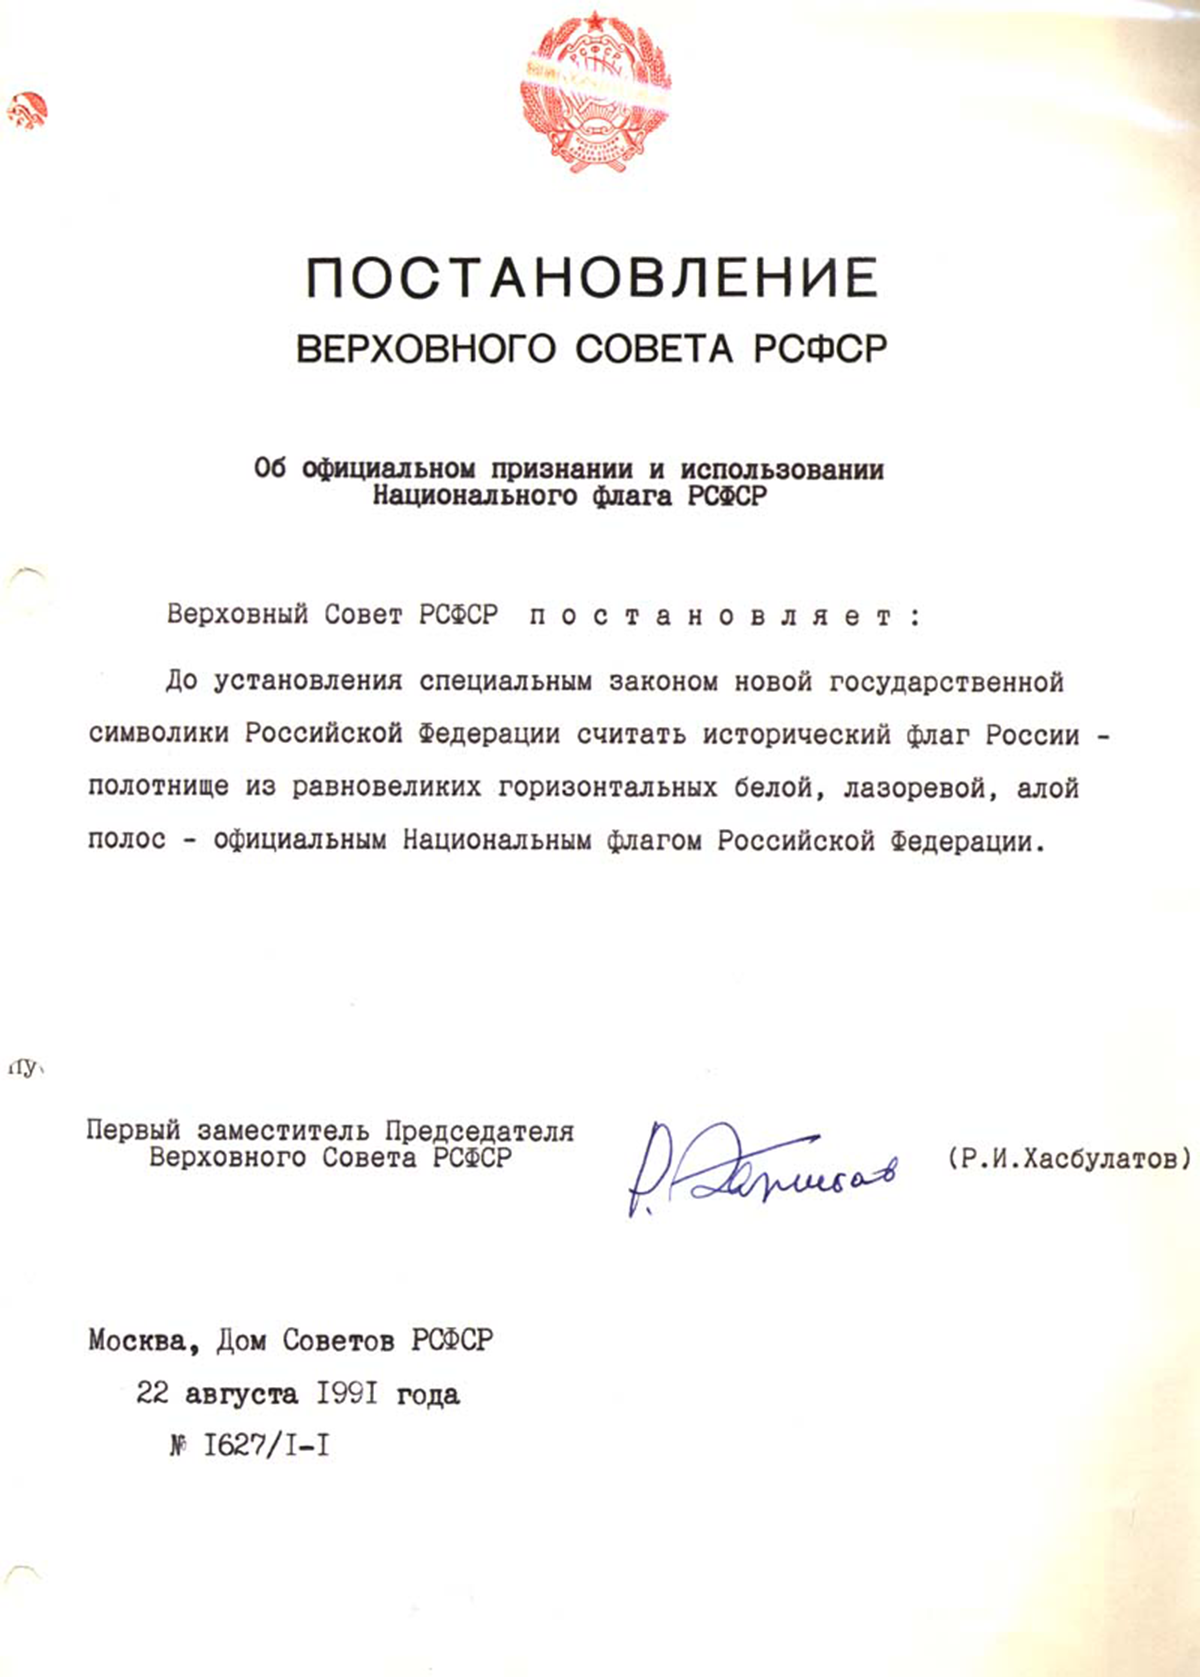 Постановление Верховного Совета РСФСР об официальном признании и использовании Национального флага РСФСР